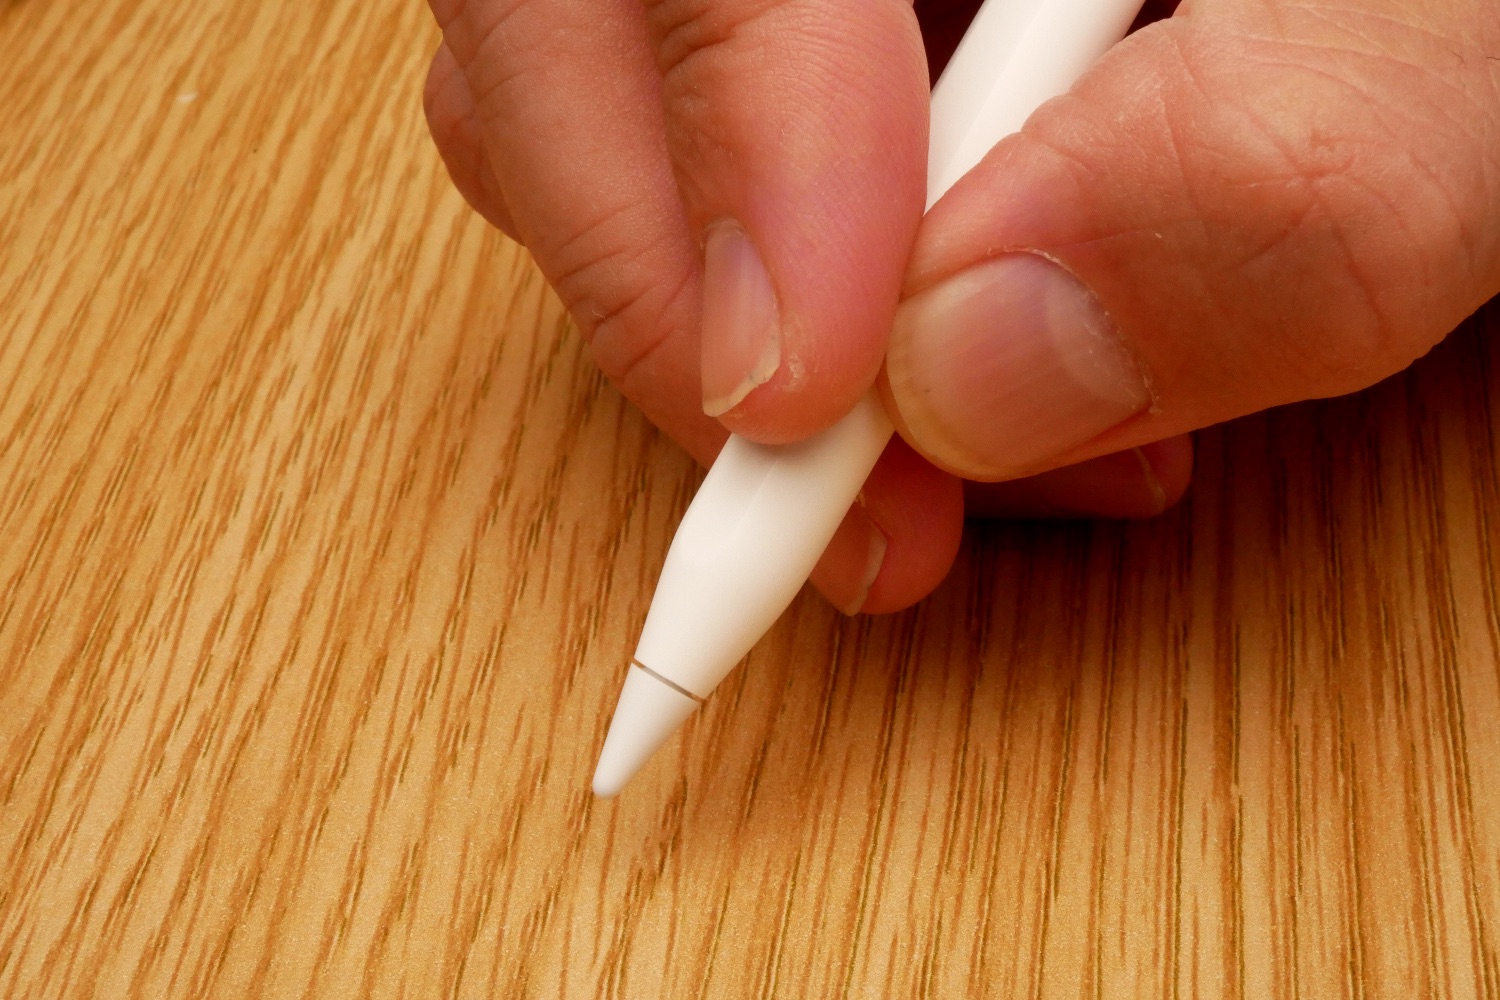 Apple Pencil ペン先 交換 あなたのペン先 大丈夫？交換時期は？ -